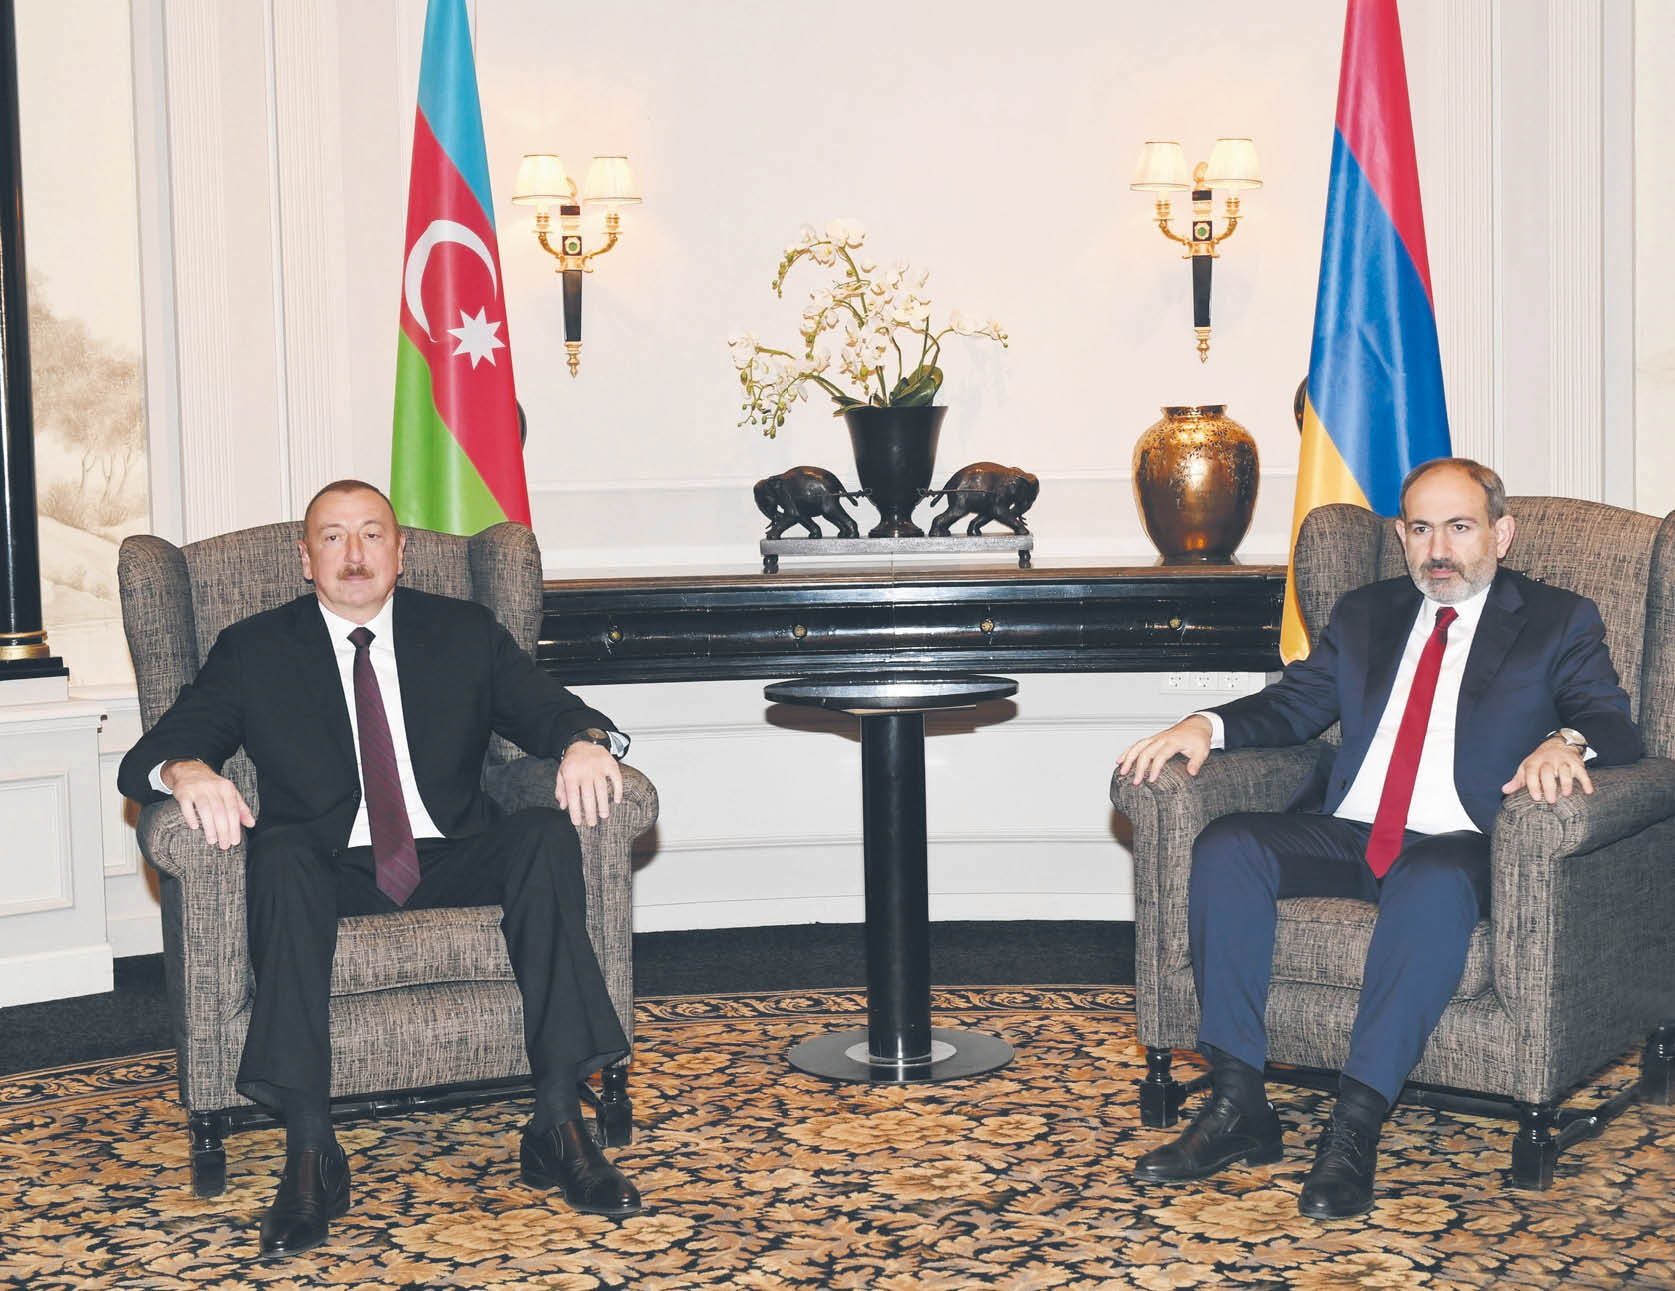 Spotkanie prezydenta Azerbejdżanu İlhama Aliyeva i premiera Armenii Nikoli Paszinjana w Wiedniu w 2019 r.